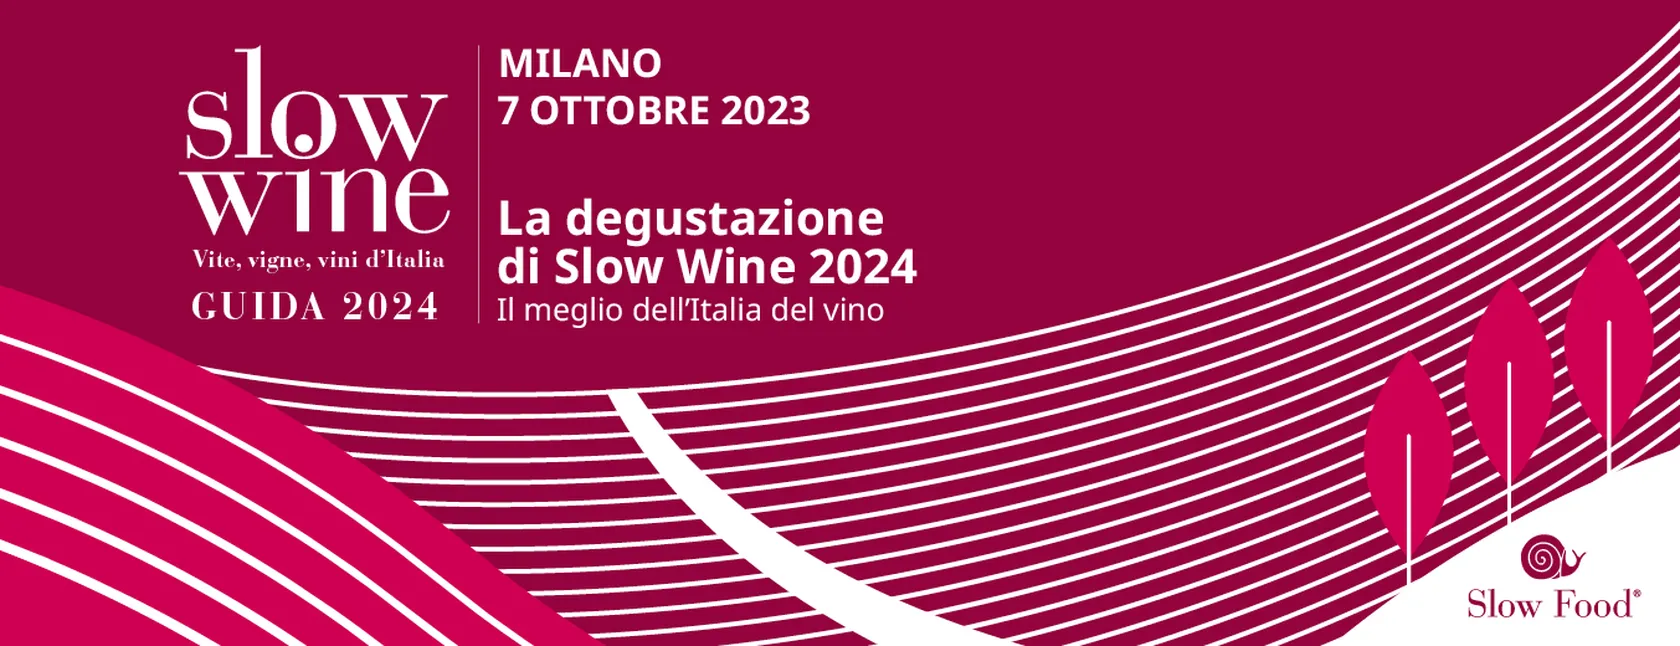 Degustazione Slow Sine Milano 2023